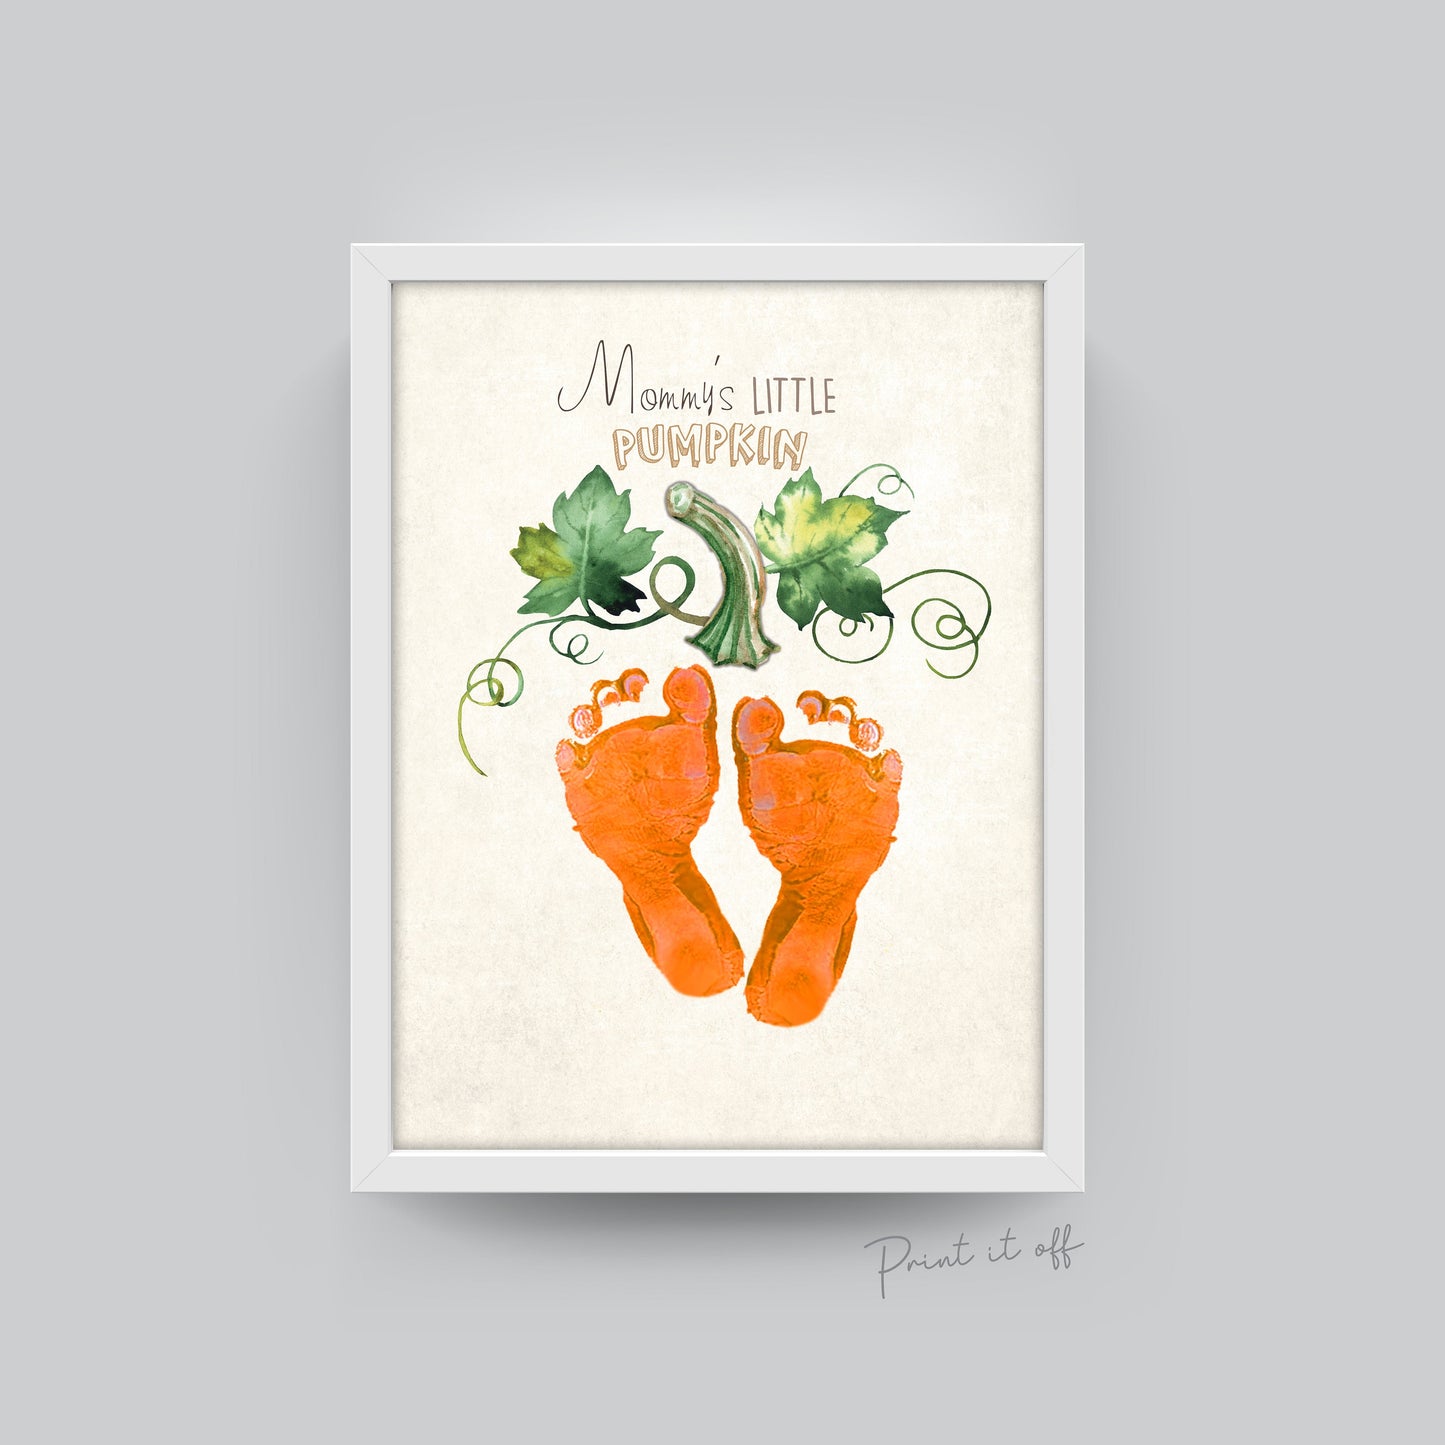 Mommy's Little Pumpkin / Footprint Feet Handprint / Halloween Art Craft / Kids Baby Toddler / Keepsake Memory Decor DIY Card Print 0317